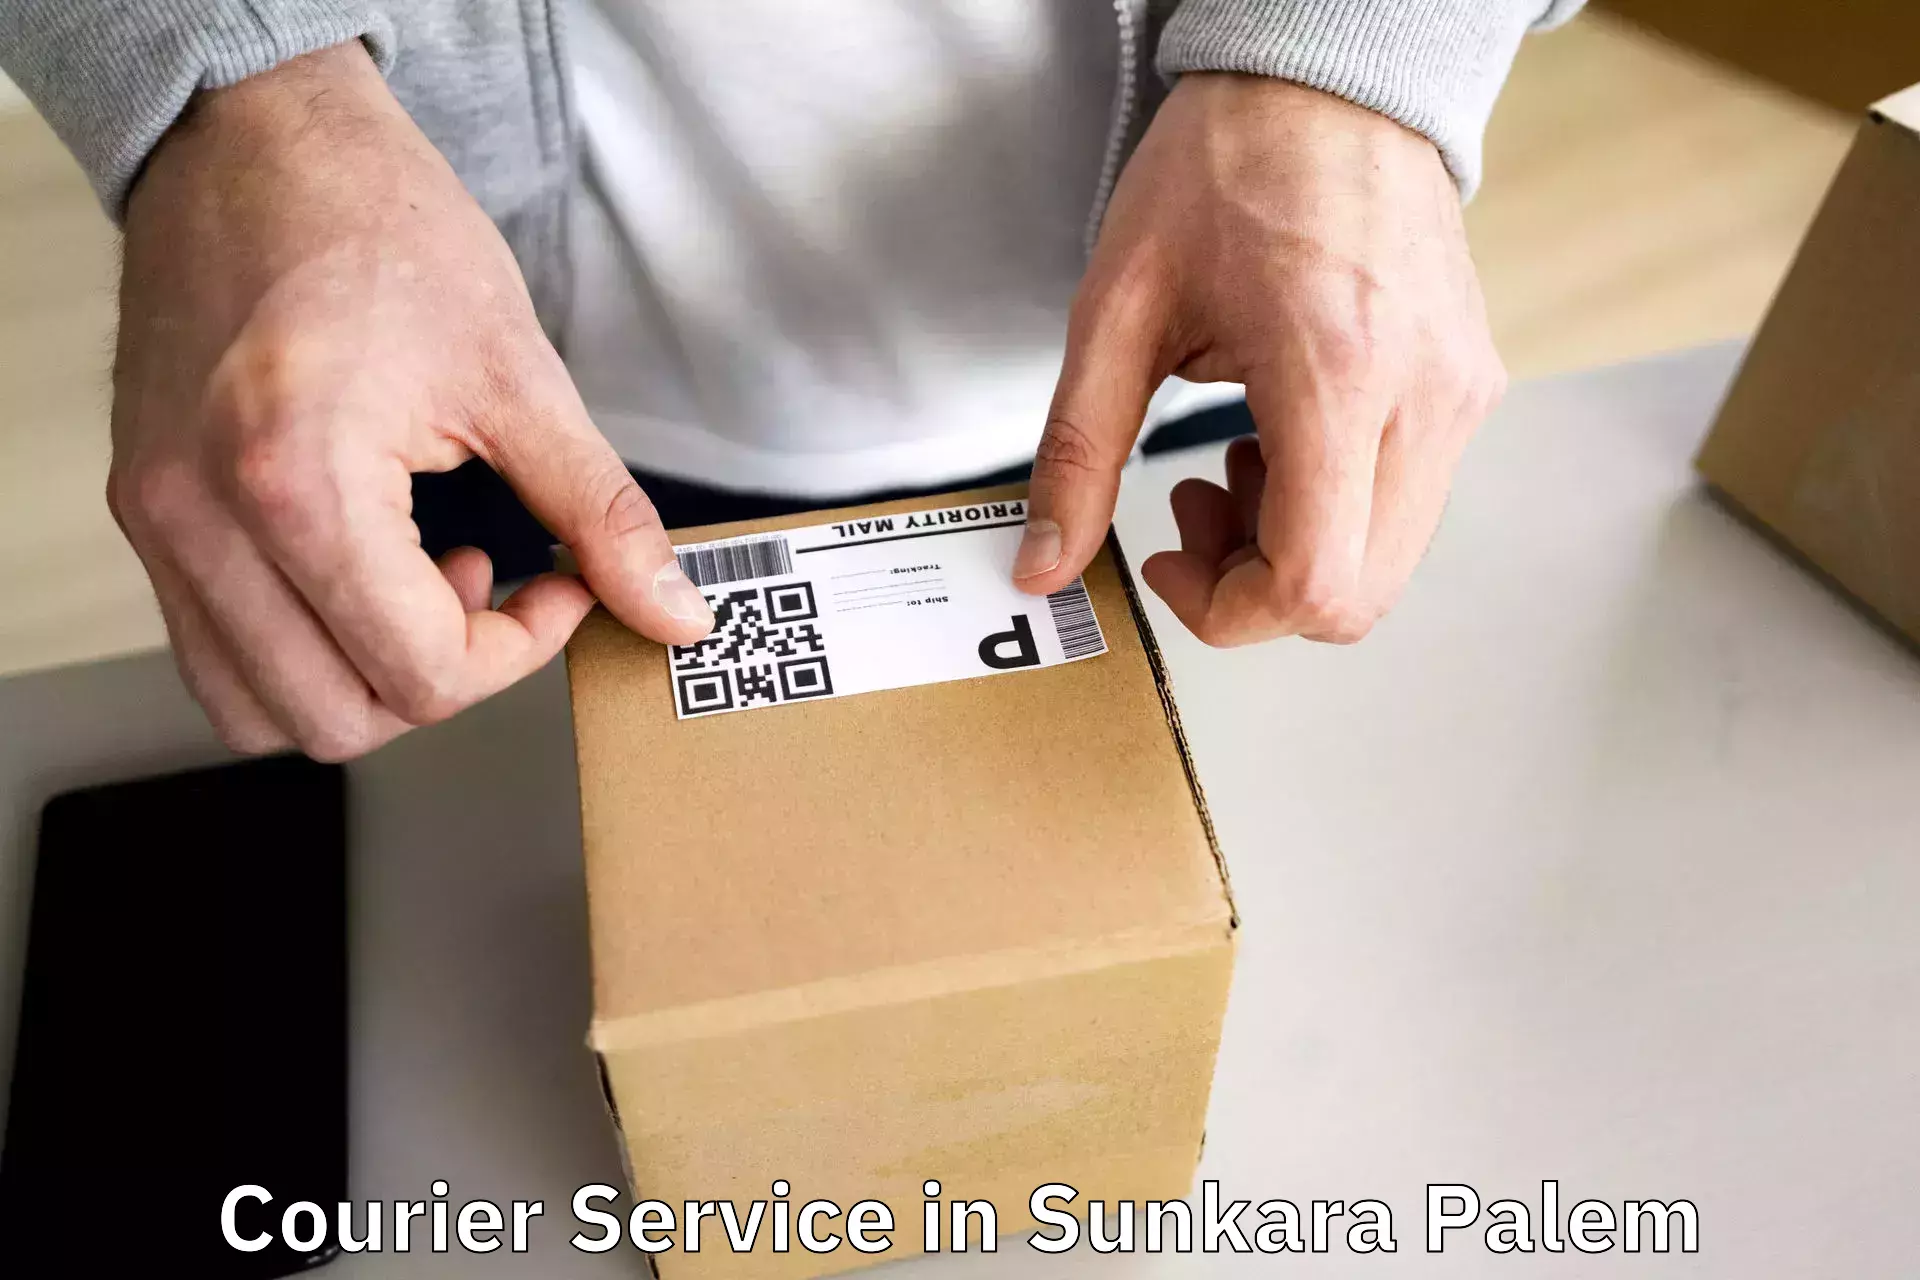 24-hour courier service in Sunkara Palem